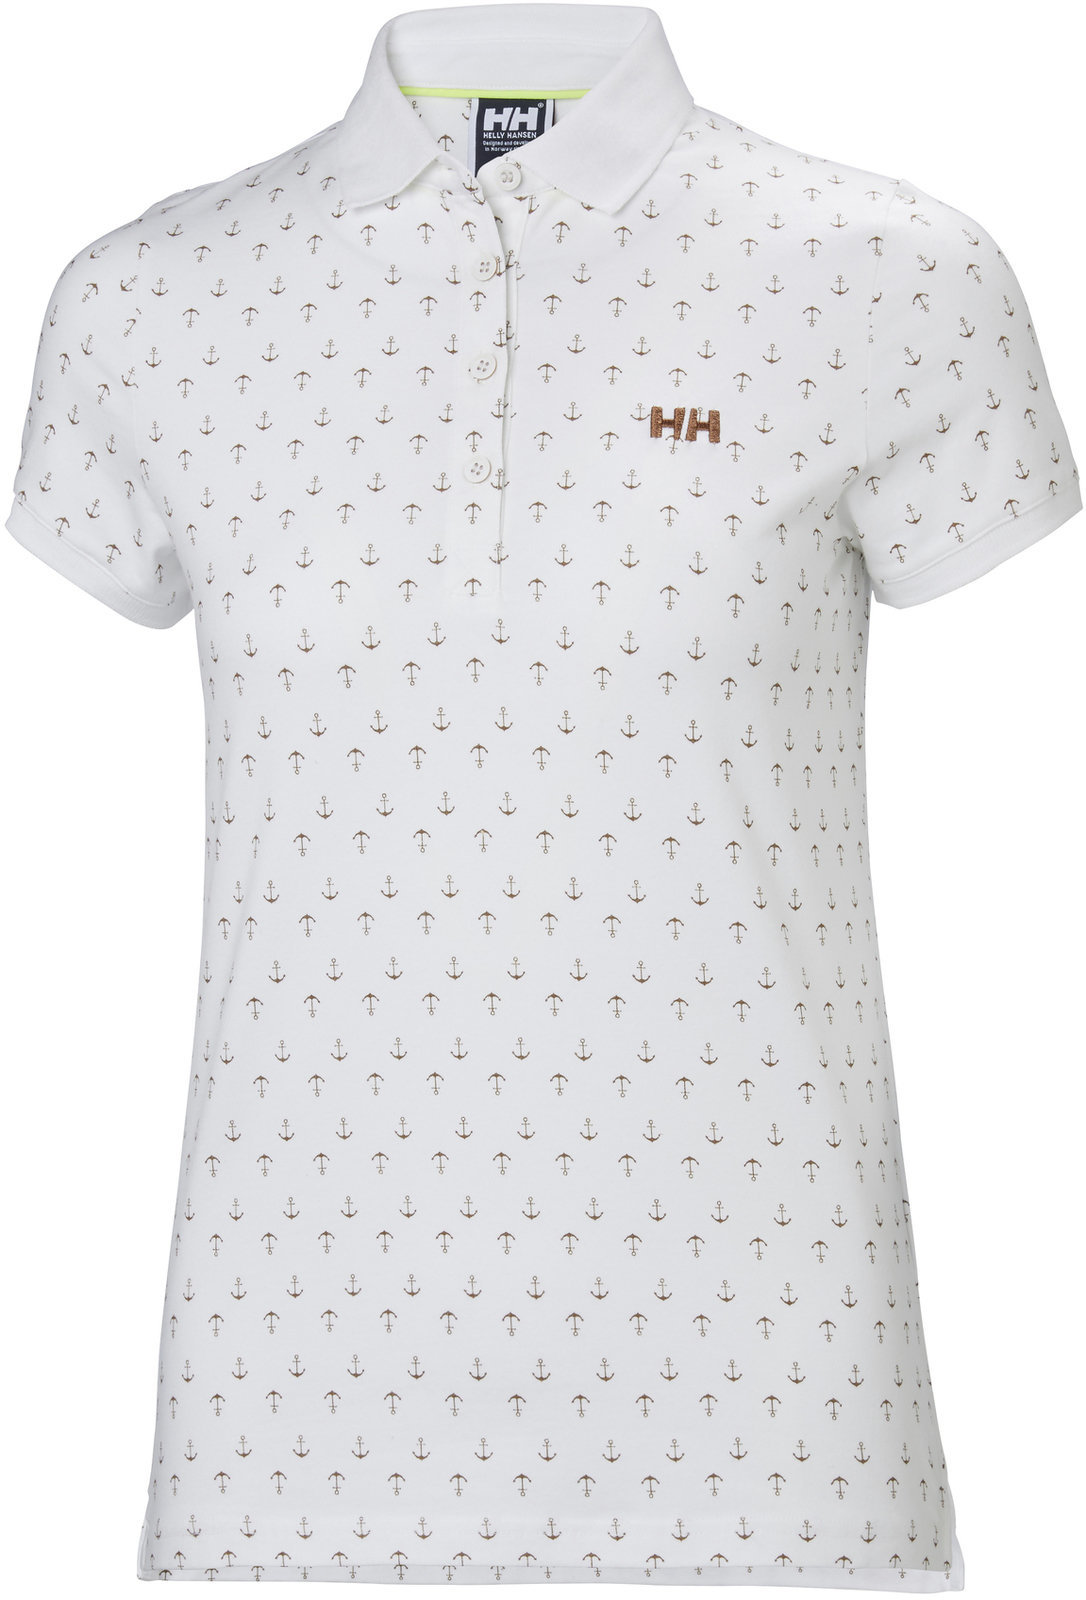 Shirt Helly Hansen W Naiad Breeze Polo White Anchor - L